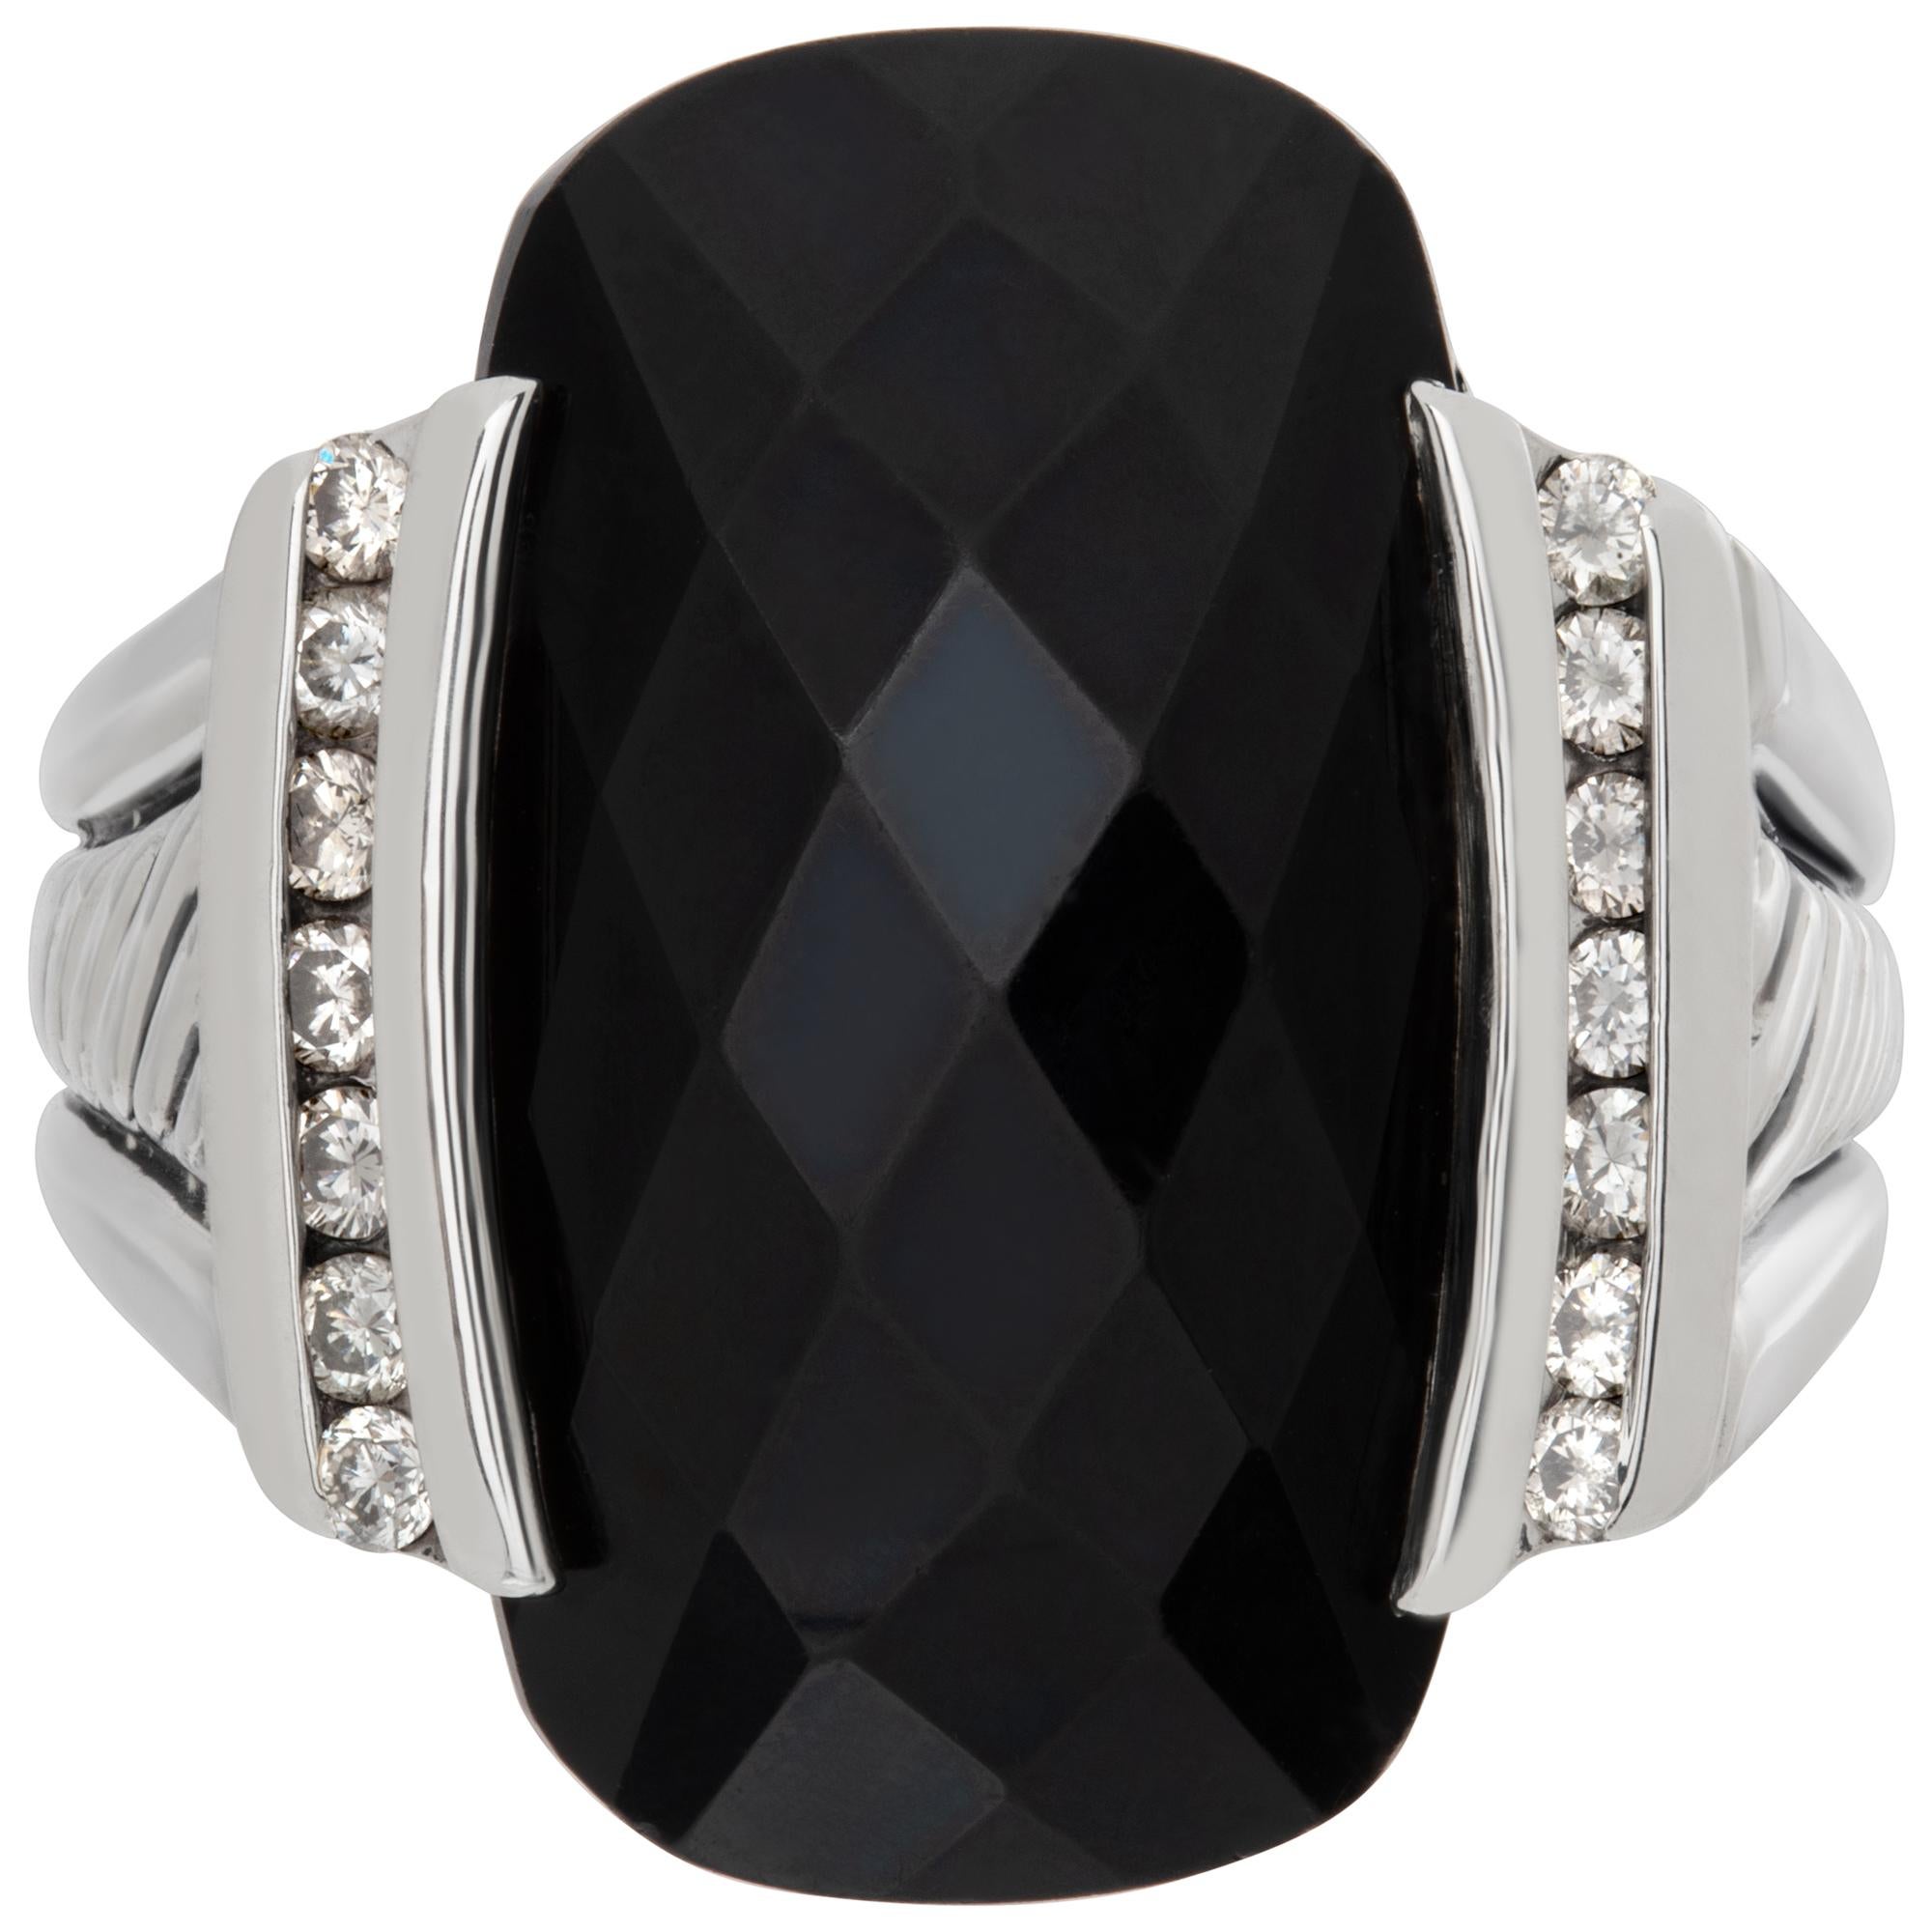 David Yurman schwarzer Onyx-Ring mit seitlichen Diamant-Akzenten, gefasst in 925er Sterlingsilber mit Markenzeichen Kabelmuster auf dem Schaft. Brillantschliff Onyx Stein Messungen 7/8 x 1/2